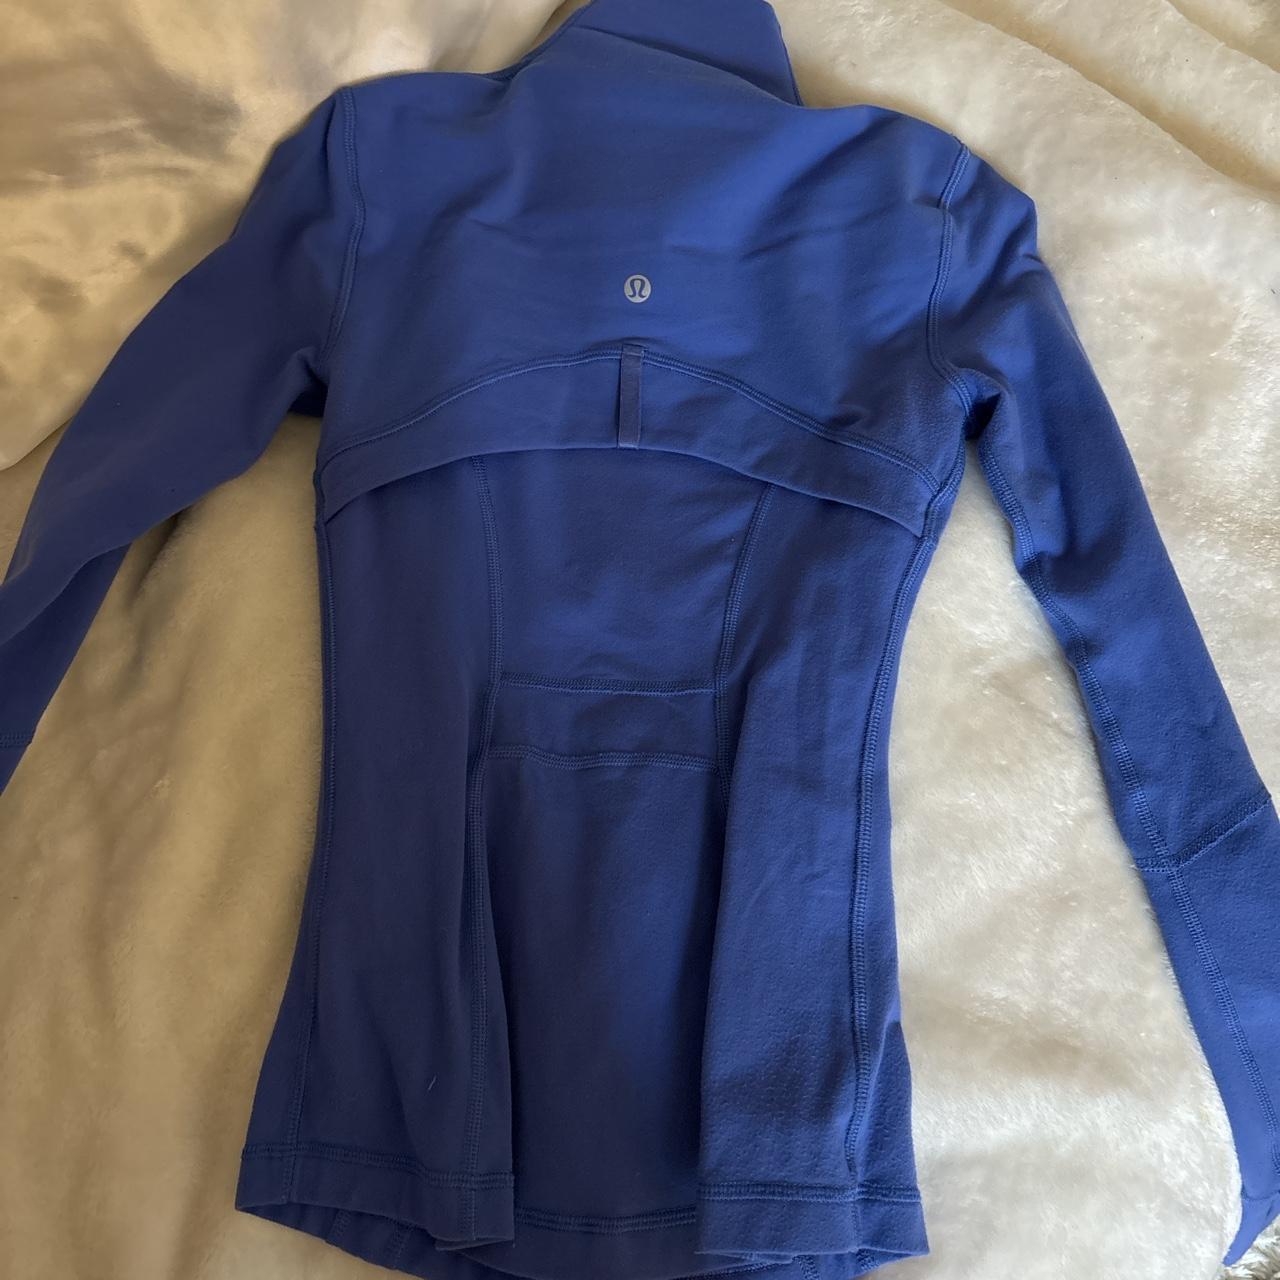 Lululemon blue\purple define jacket size zero - Depop